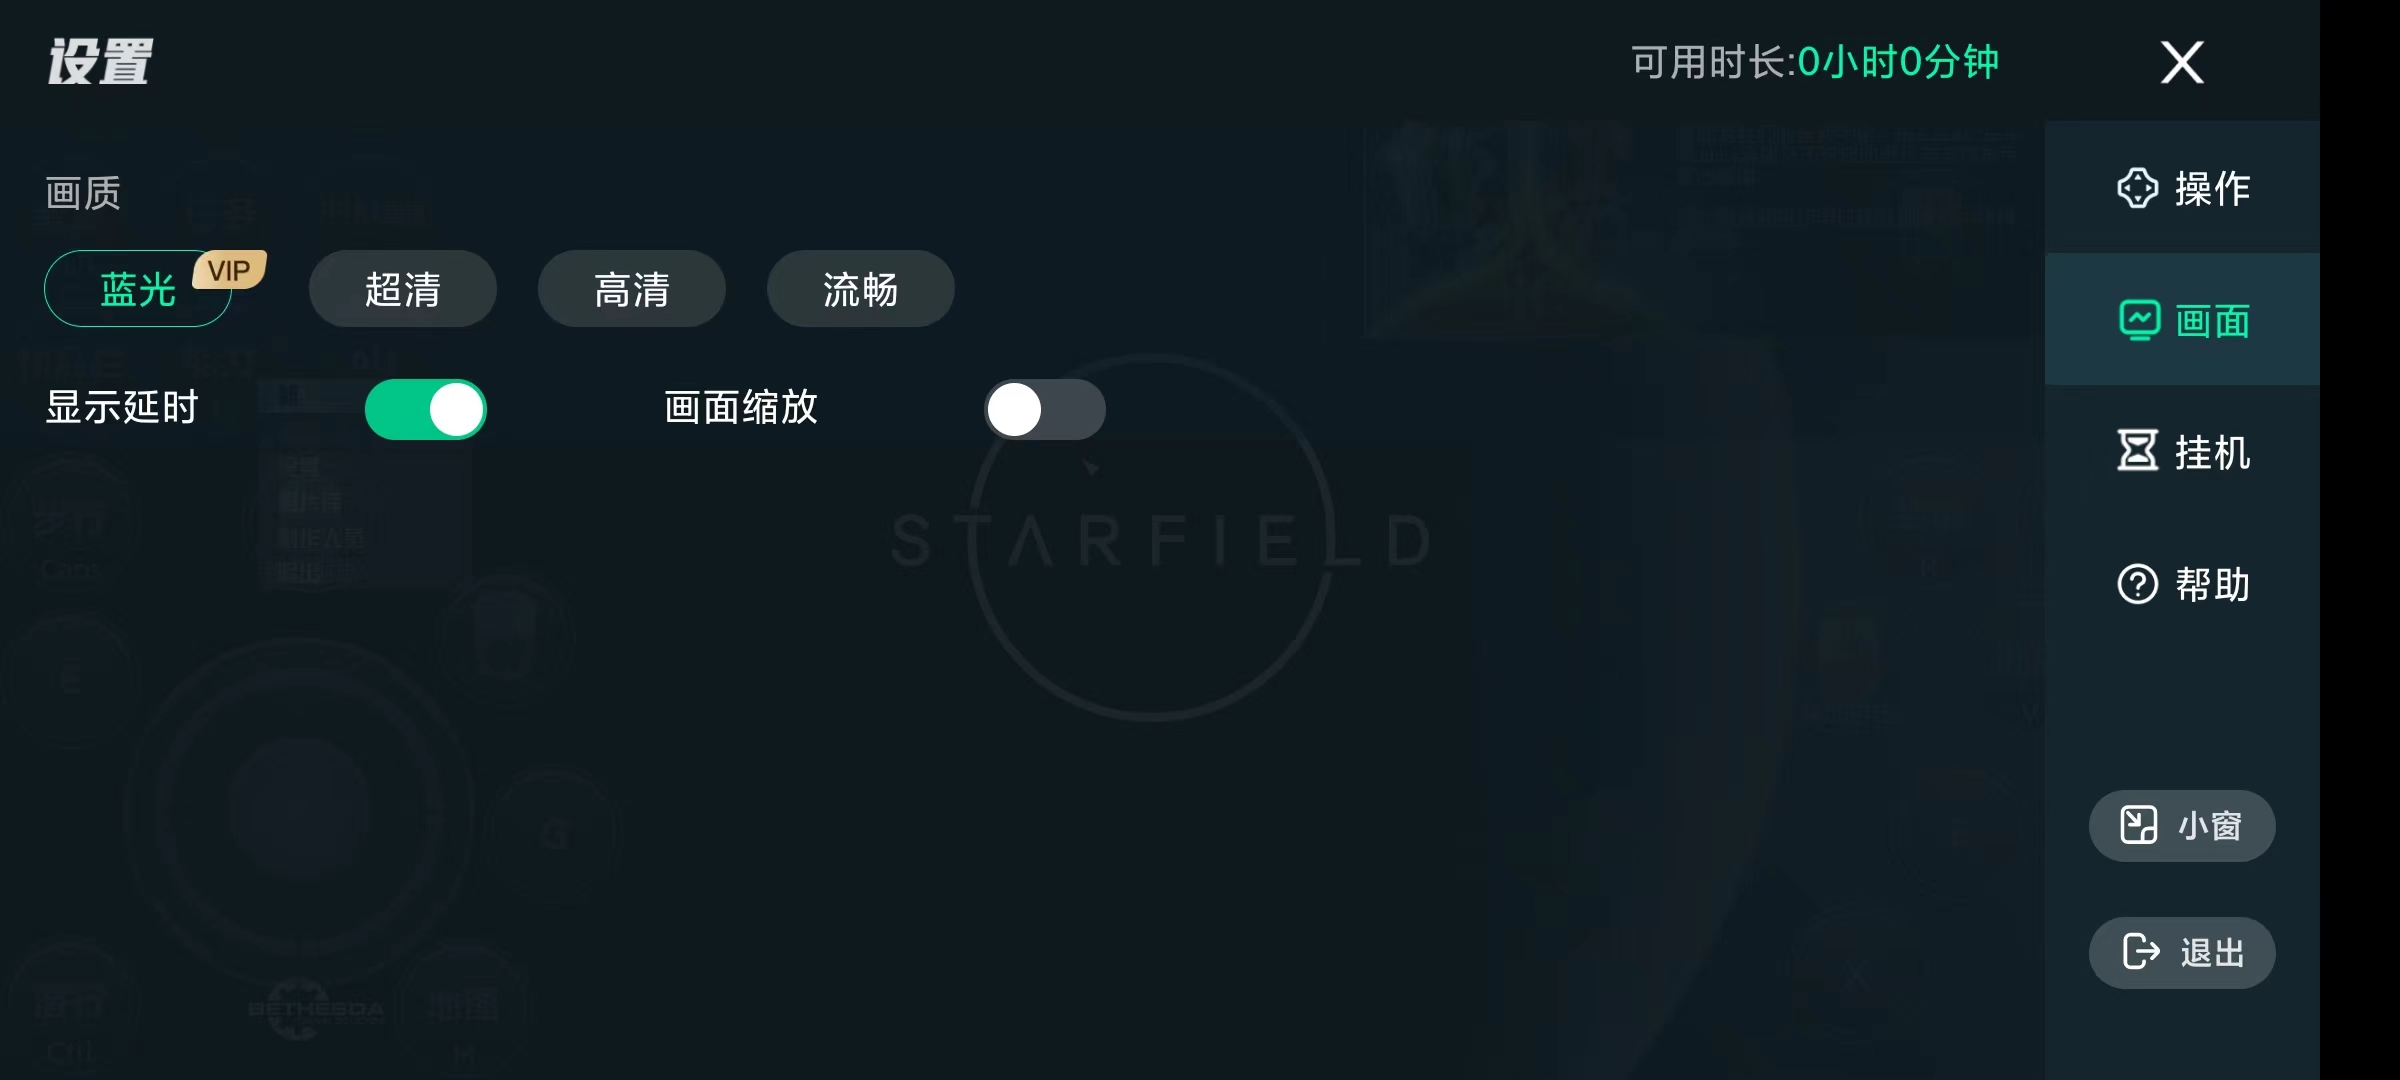 YOWA云游戏2.8.15解锁会员手机畅玩steam 屠城辅助网www.tcfz1.com7430